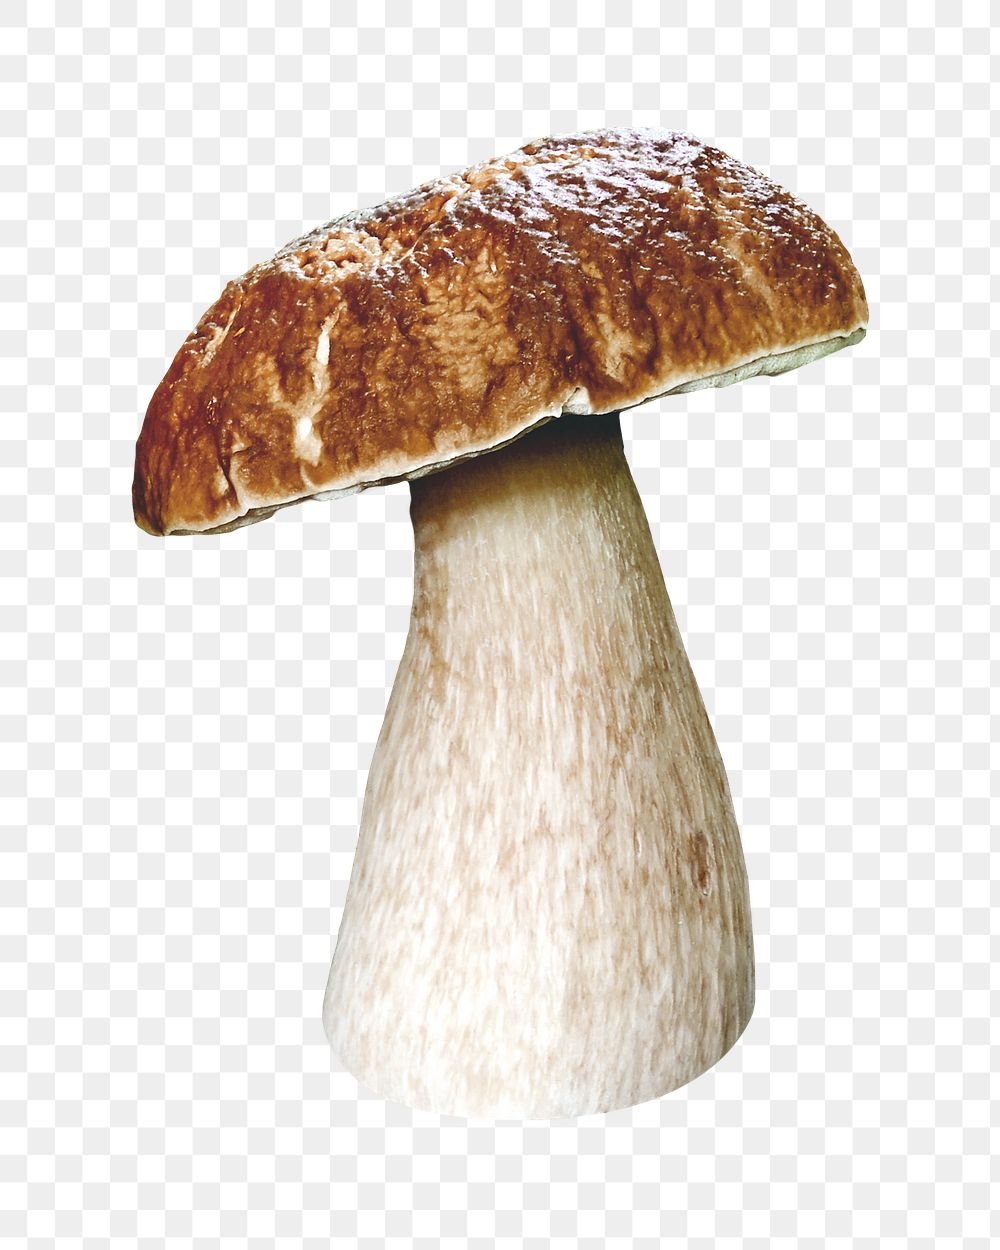 Mushroom png collage element on transparent background